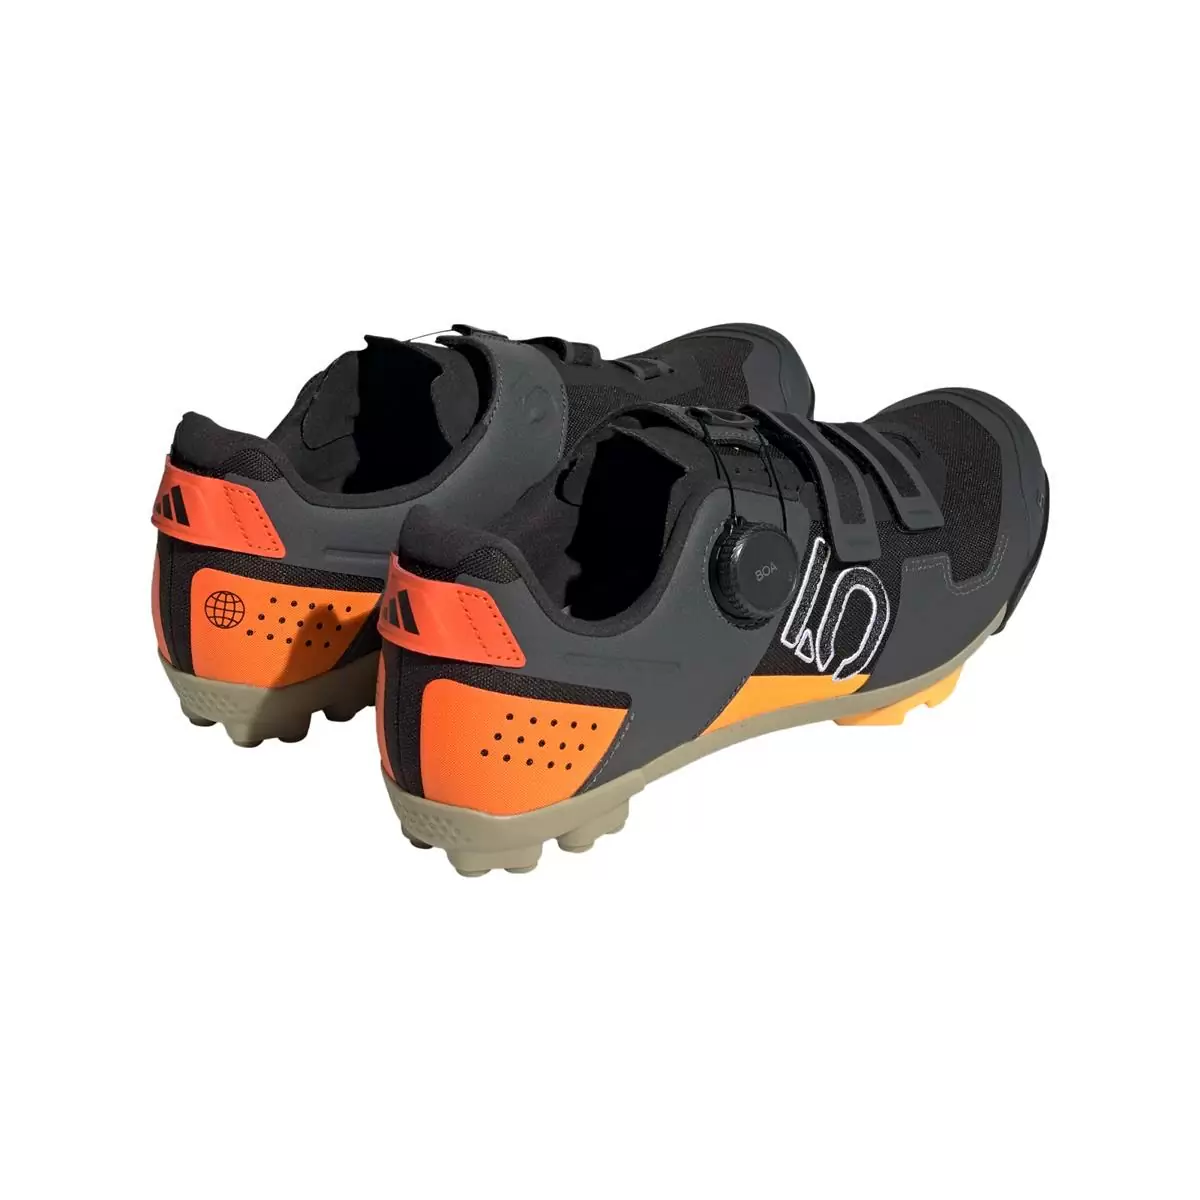 Clip 5.10 Kestrel Boa MTB-Schuhe Schwarz/Orange Größe 41 #4